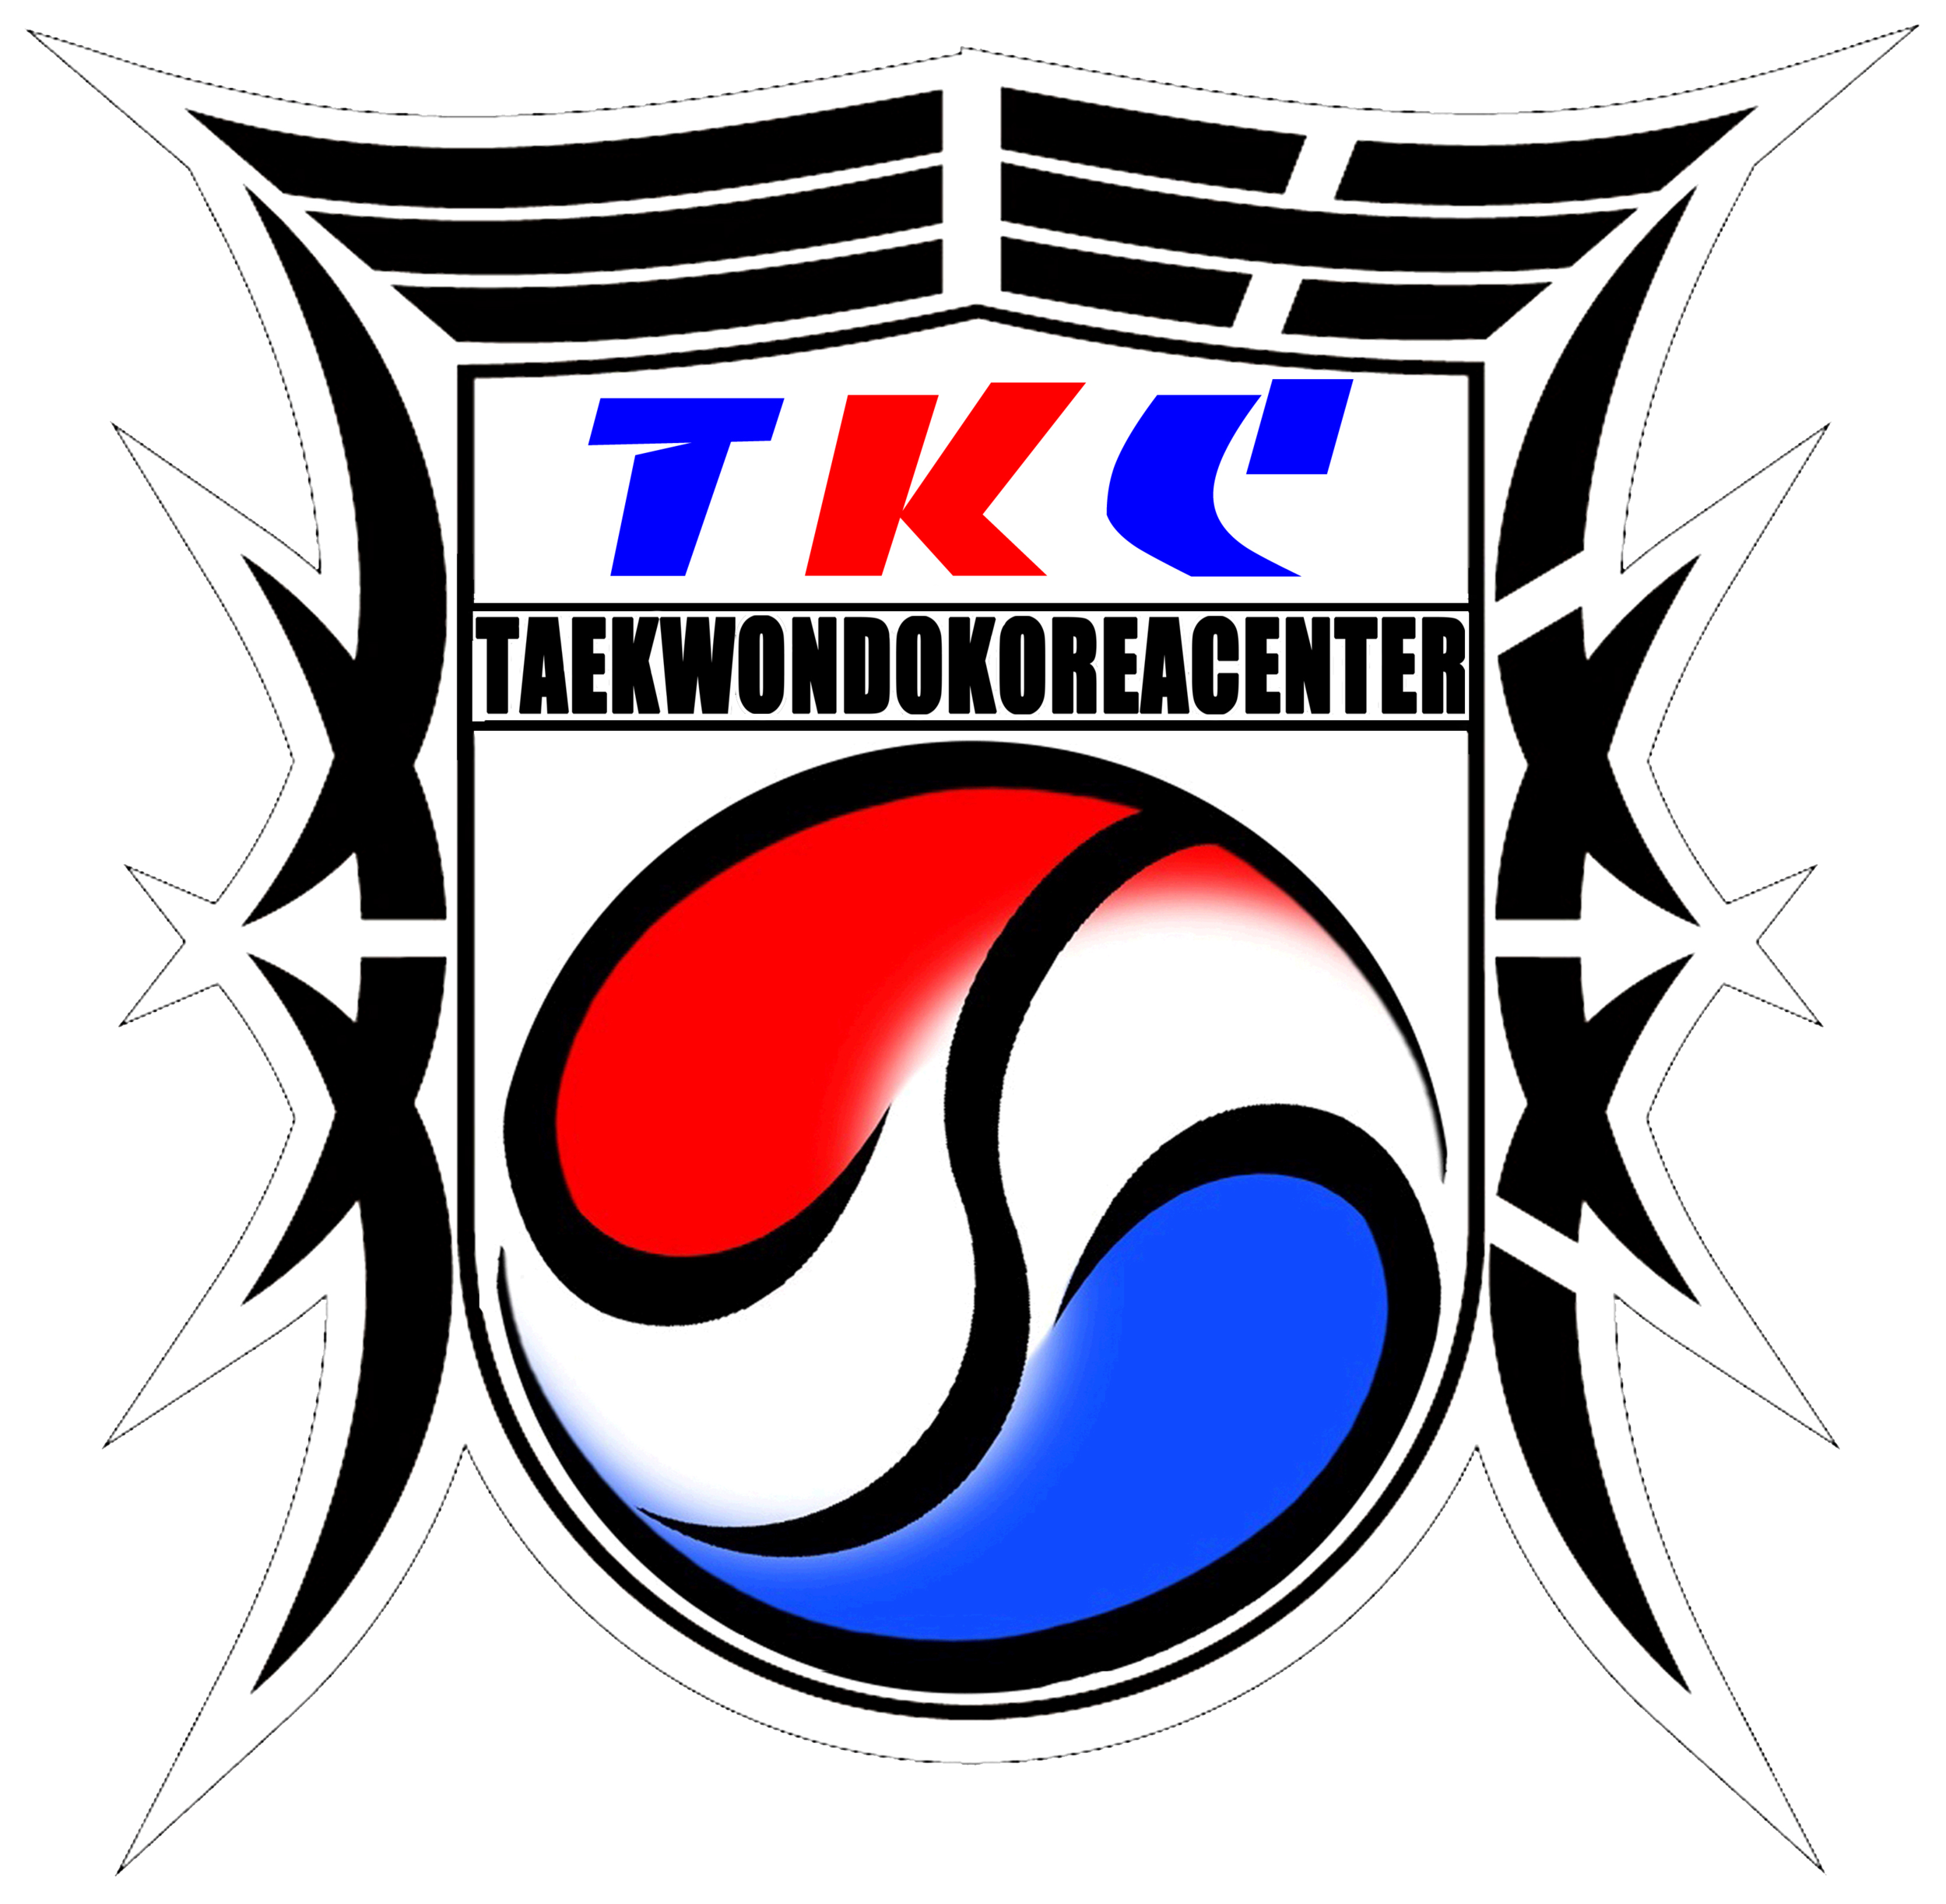 Taekwondo Korea Center